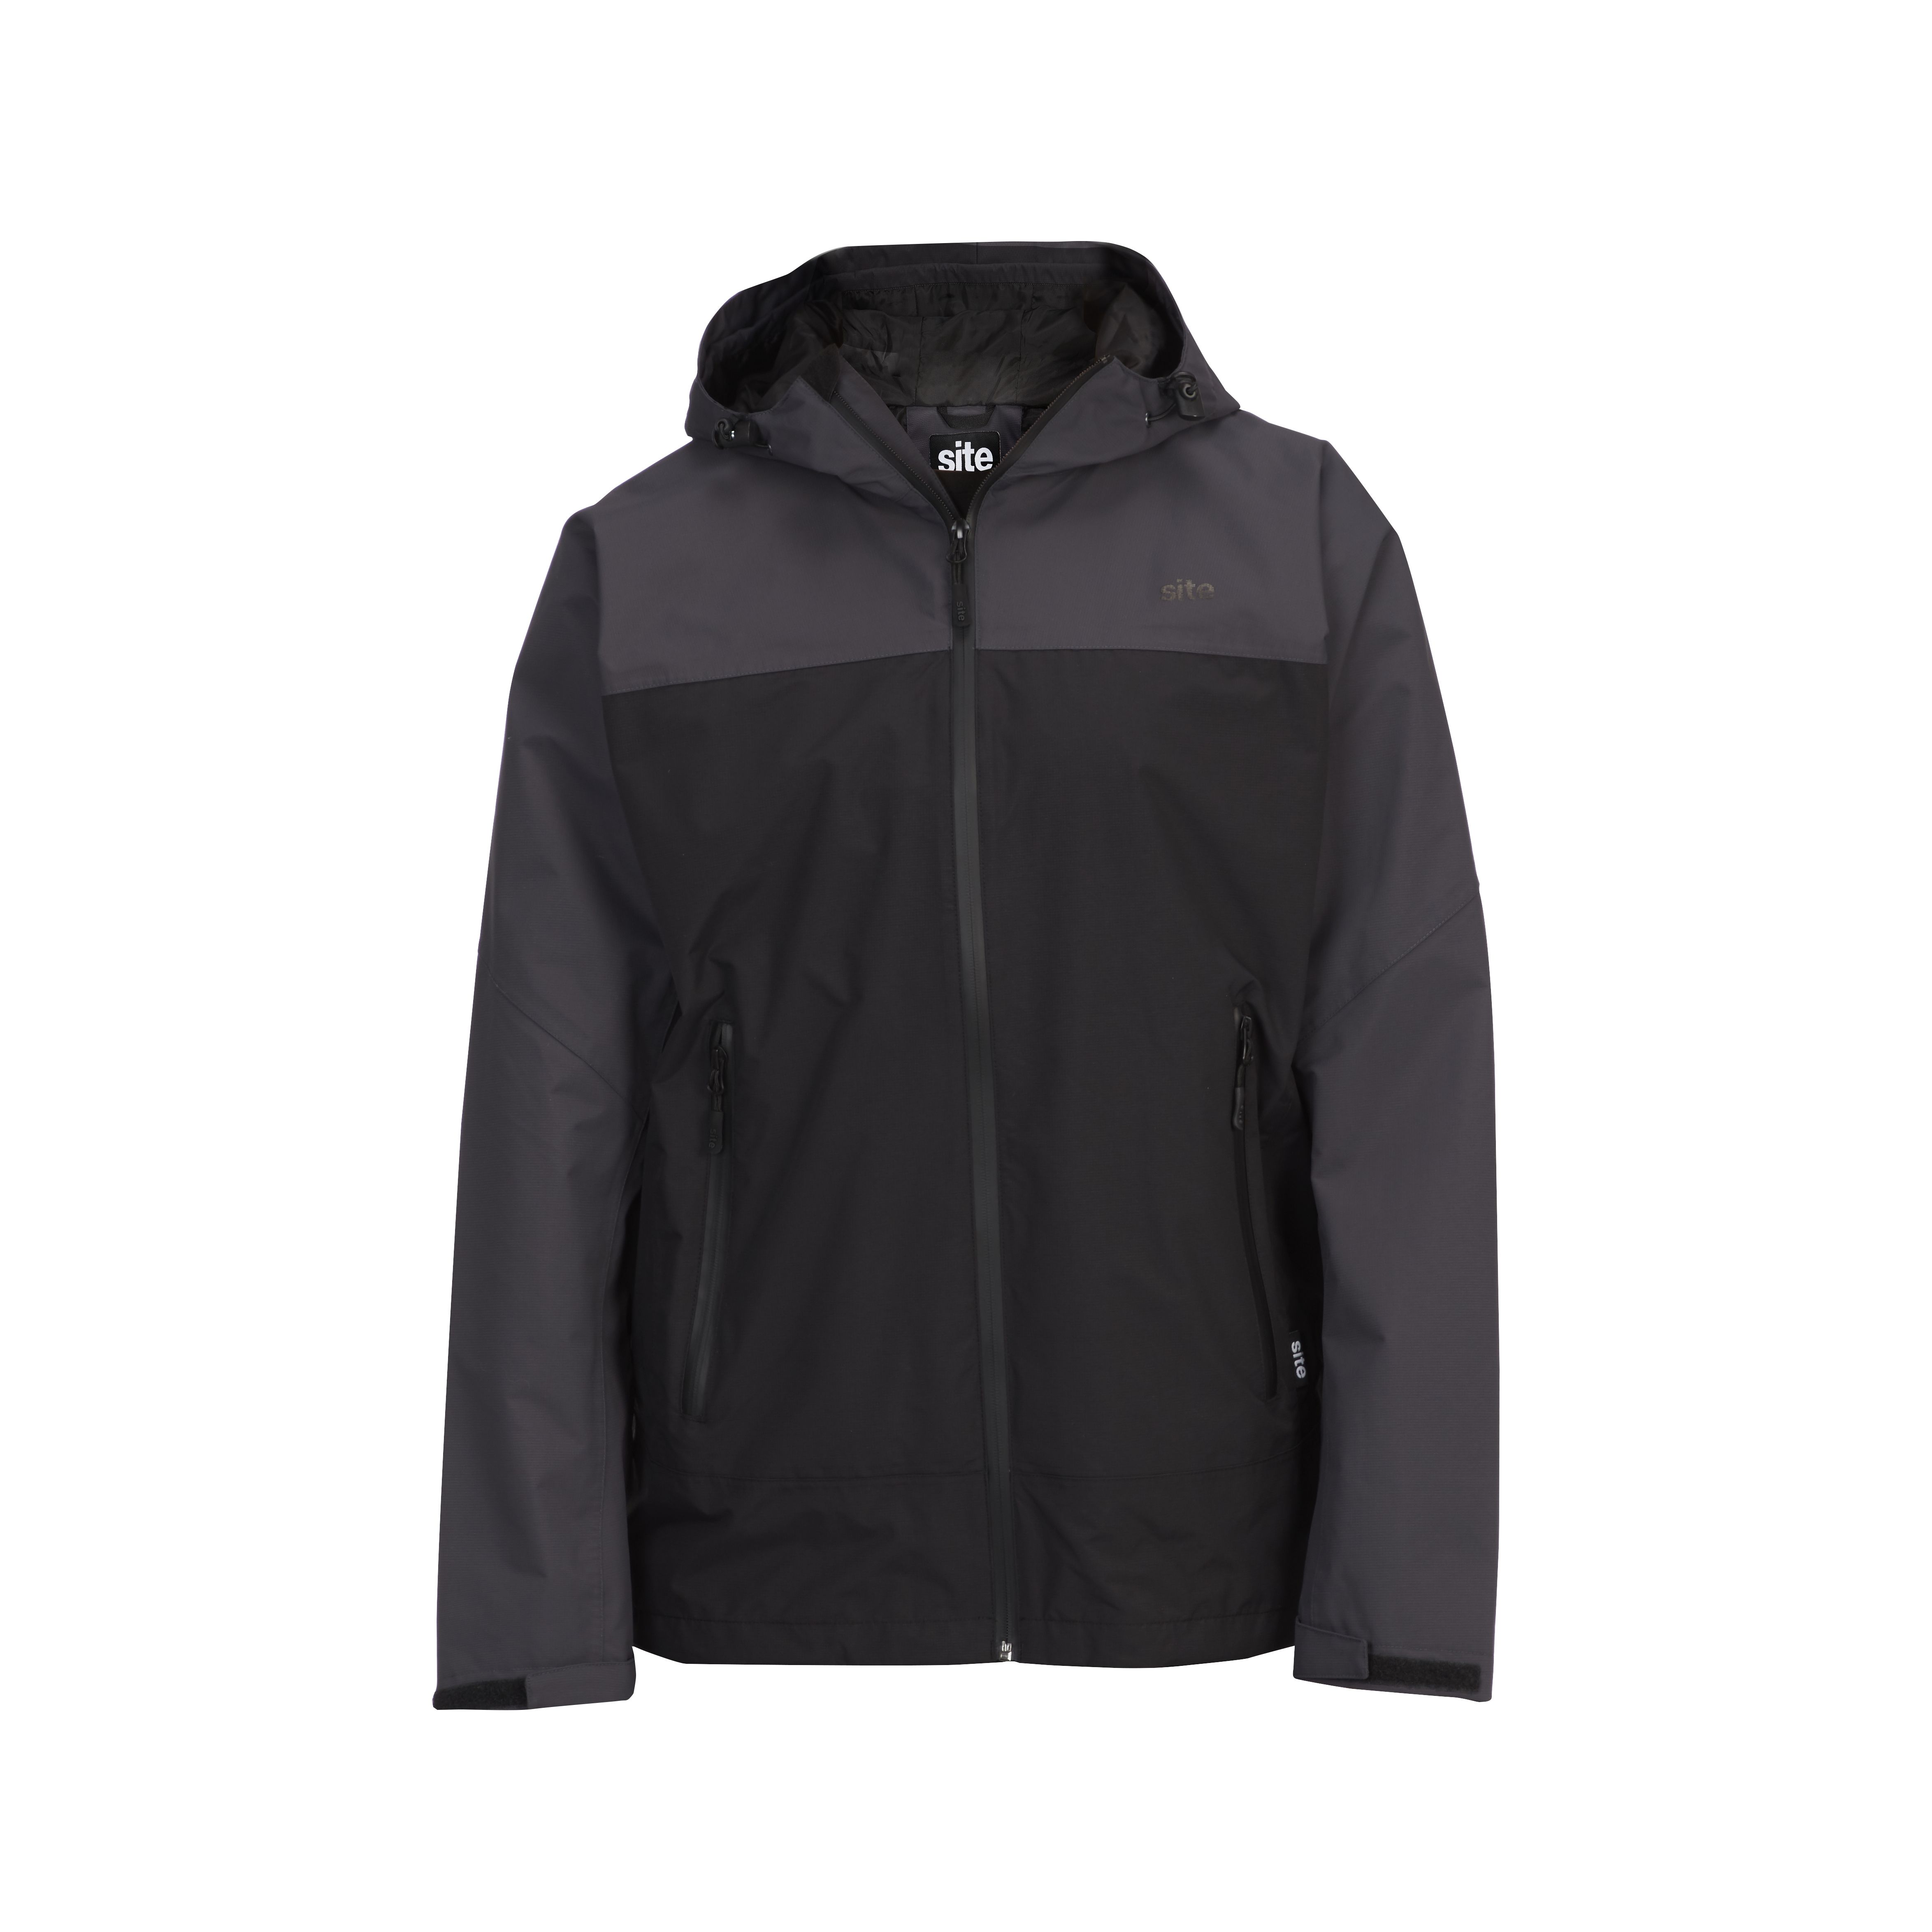 Site Black & Grey Waterproof Jacket Large